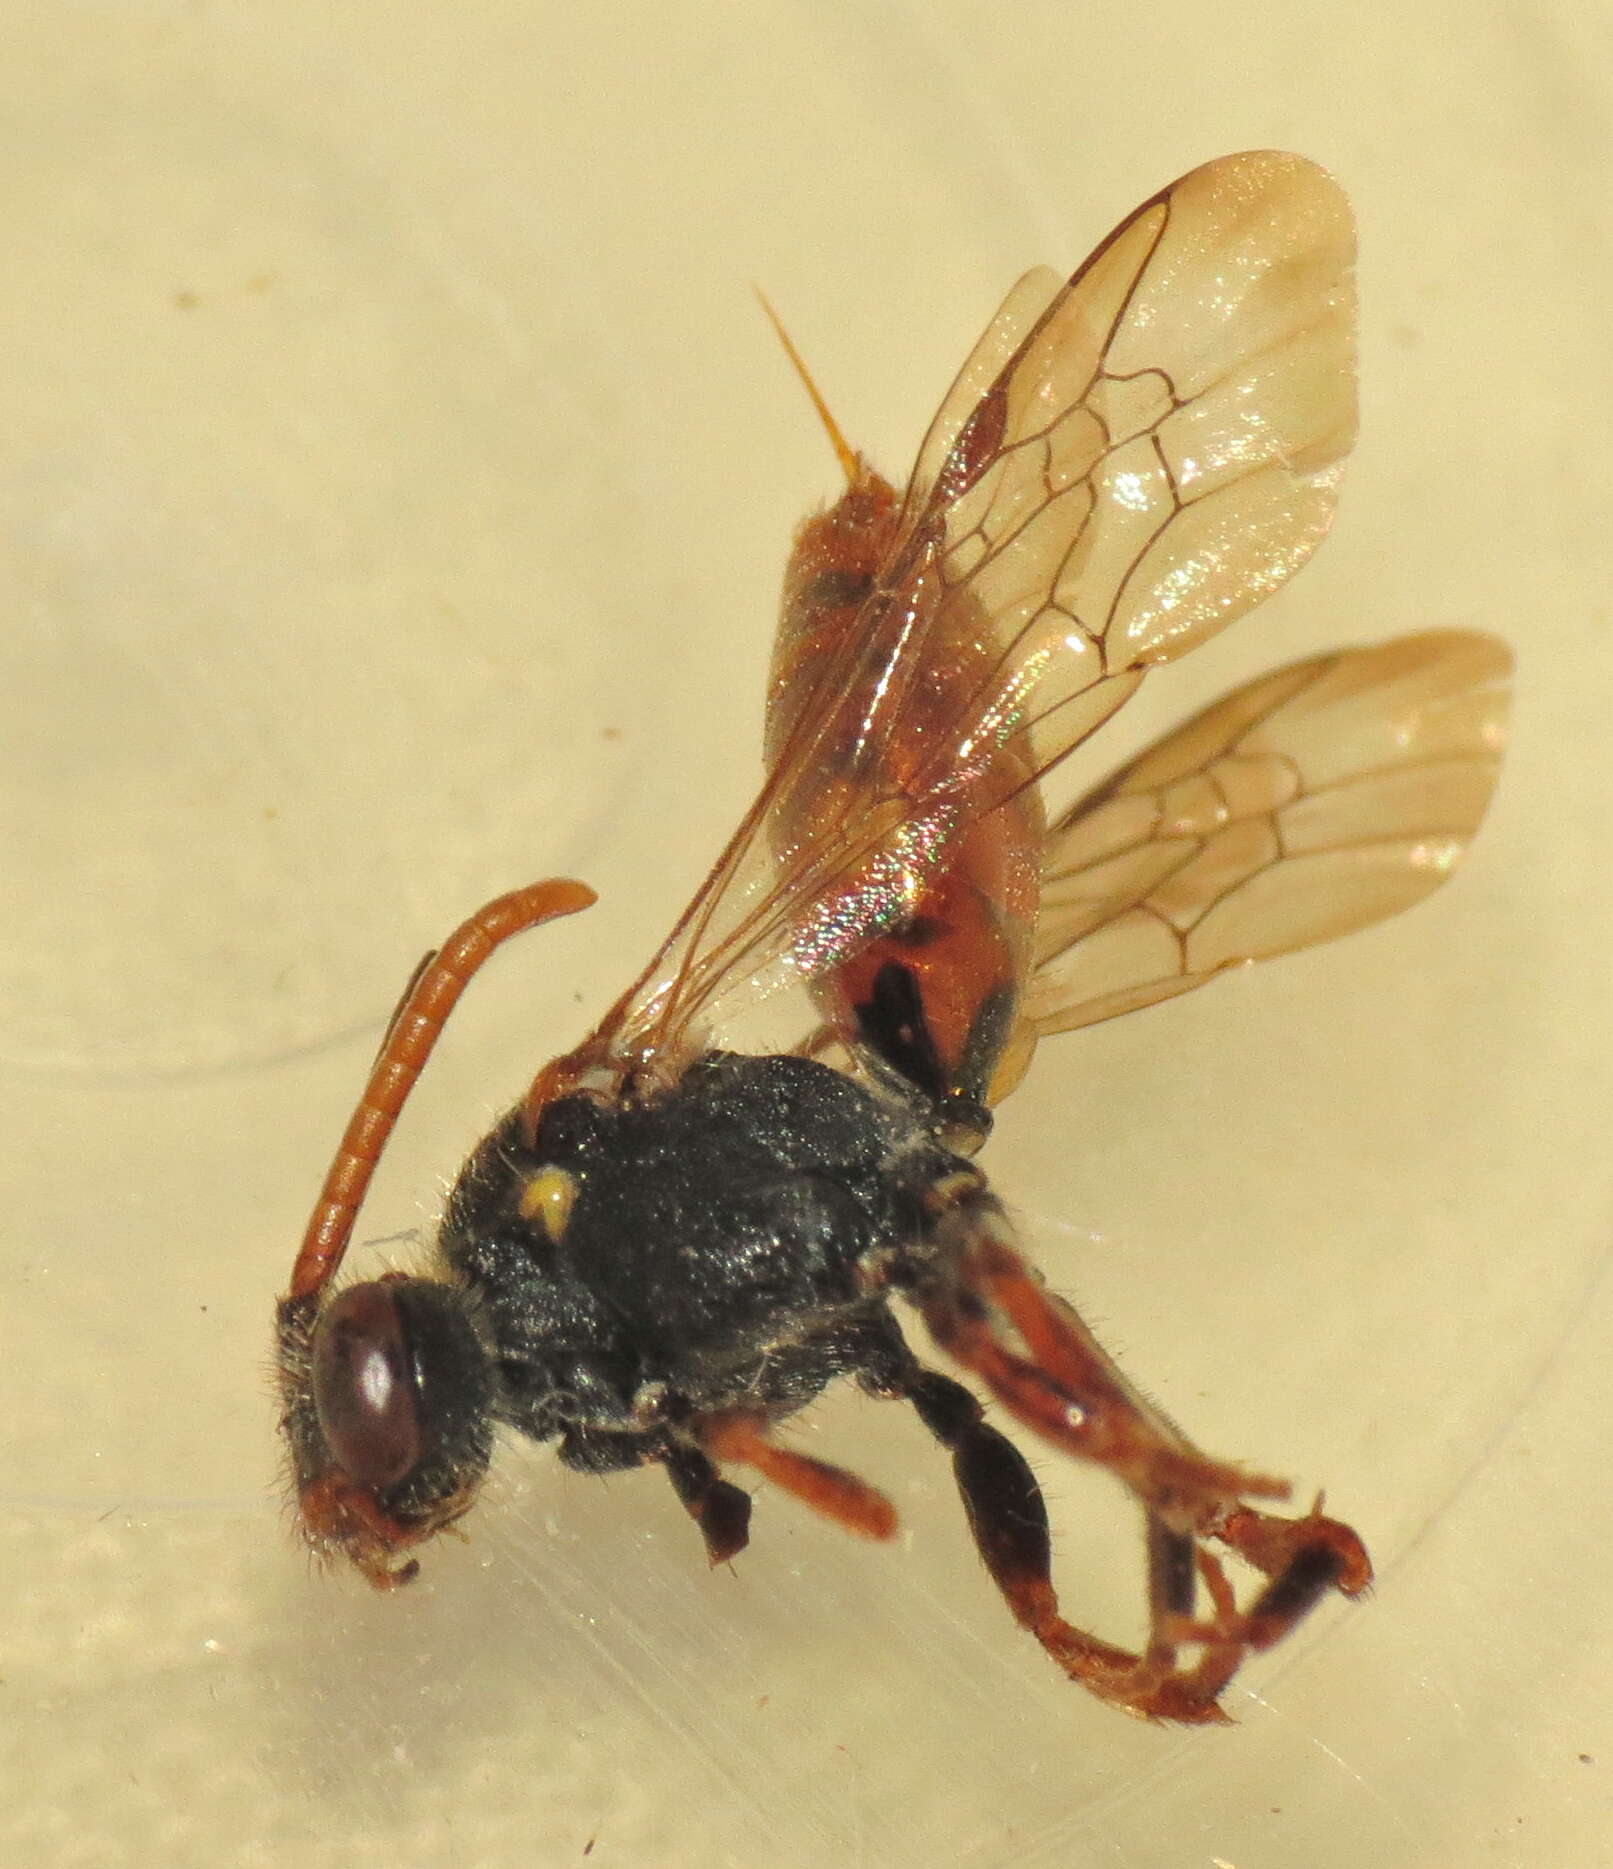 Image of cuckoo bee